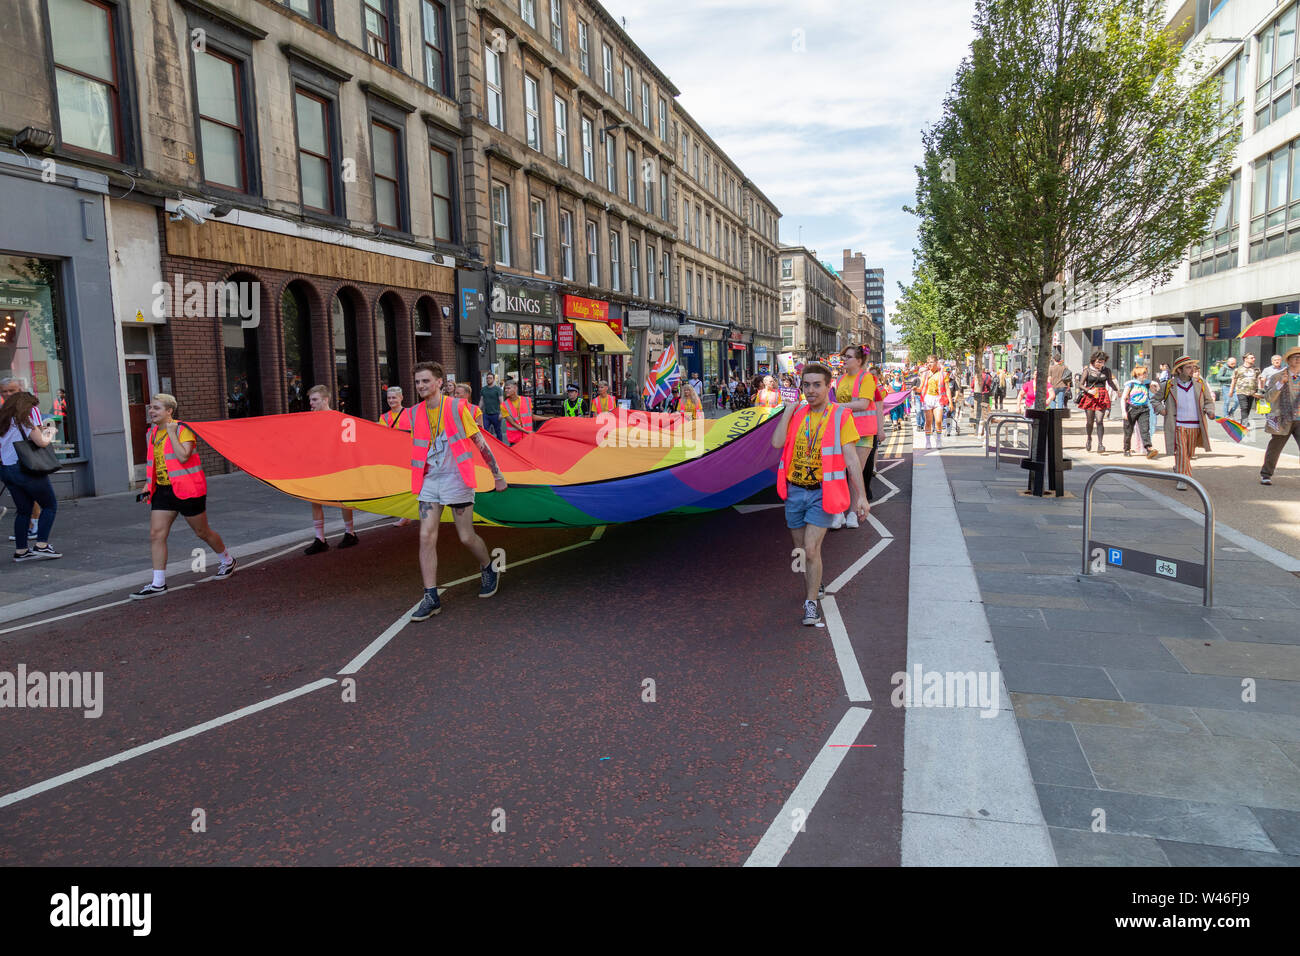 Glasgow, Royaume-Uni. 20 juillet 2019. Le tout premier événement de la fierté LGBT Gla samedi débute avec une marche de Glasgow Kelvingrove Park's à George Square. Après un line-up d'animations est prévu à l'Samedi festival Gla noeud du Strathclyde University Student Union. Banque D'Images